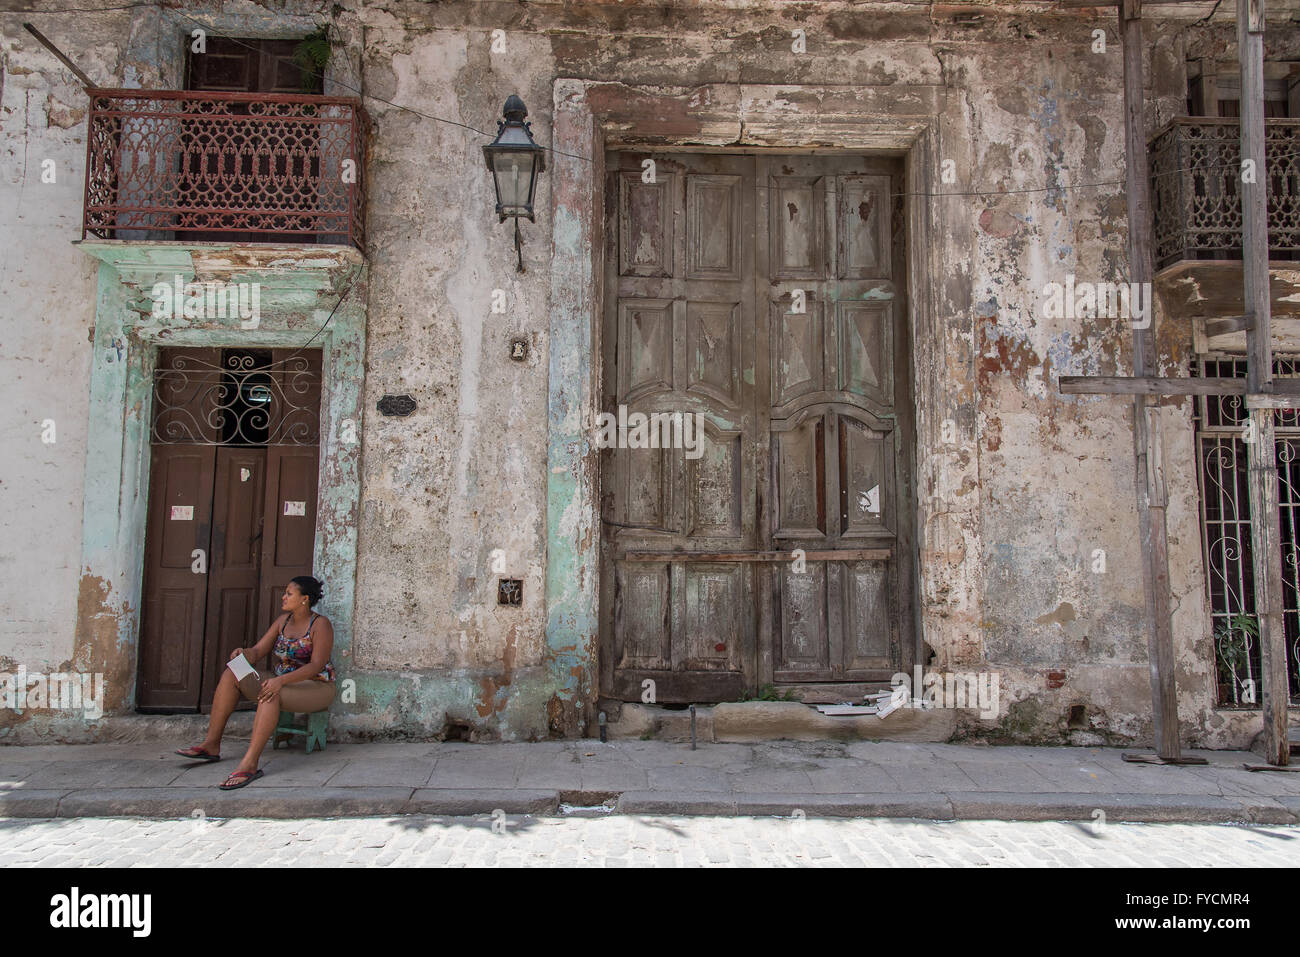 Kubanische Einheimischen gehen über ihr täglichen Leben in den Straßen von Alt-Havanna, Kuba.  Sehr entspannt und ohne Eile. Stockfoto